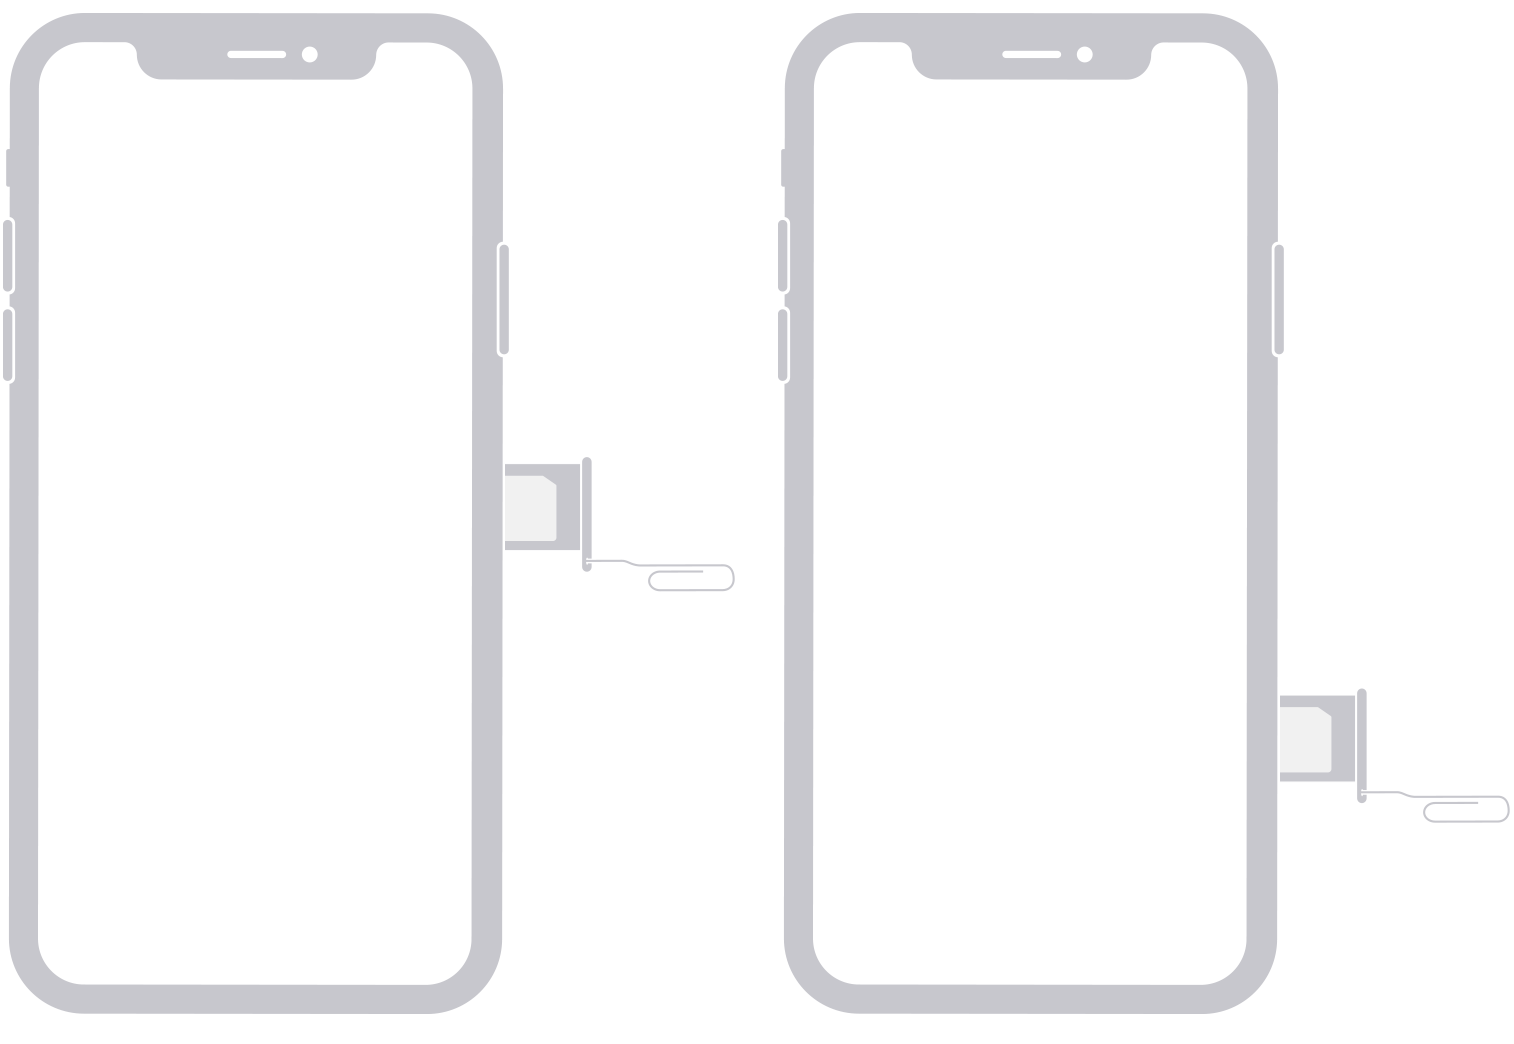 På billedet vises SIM-kortet på højre side af iPhone